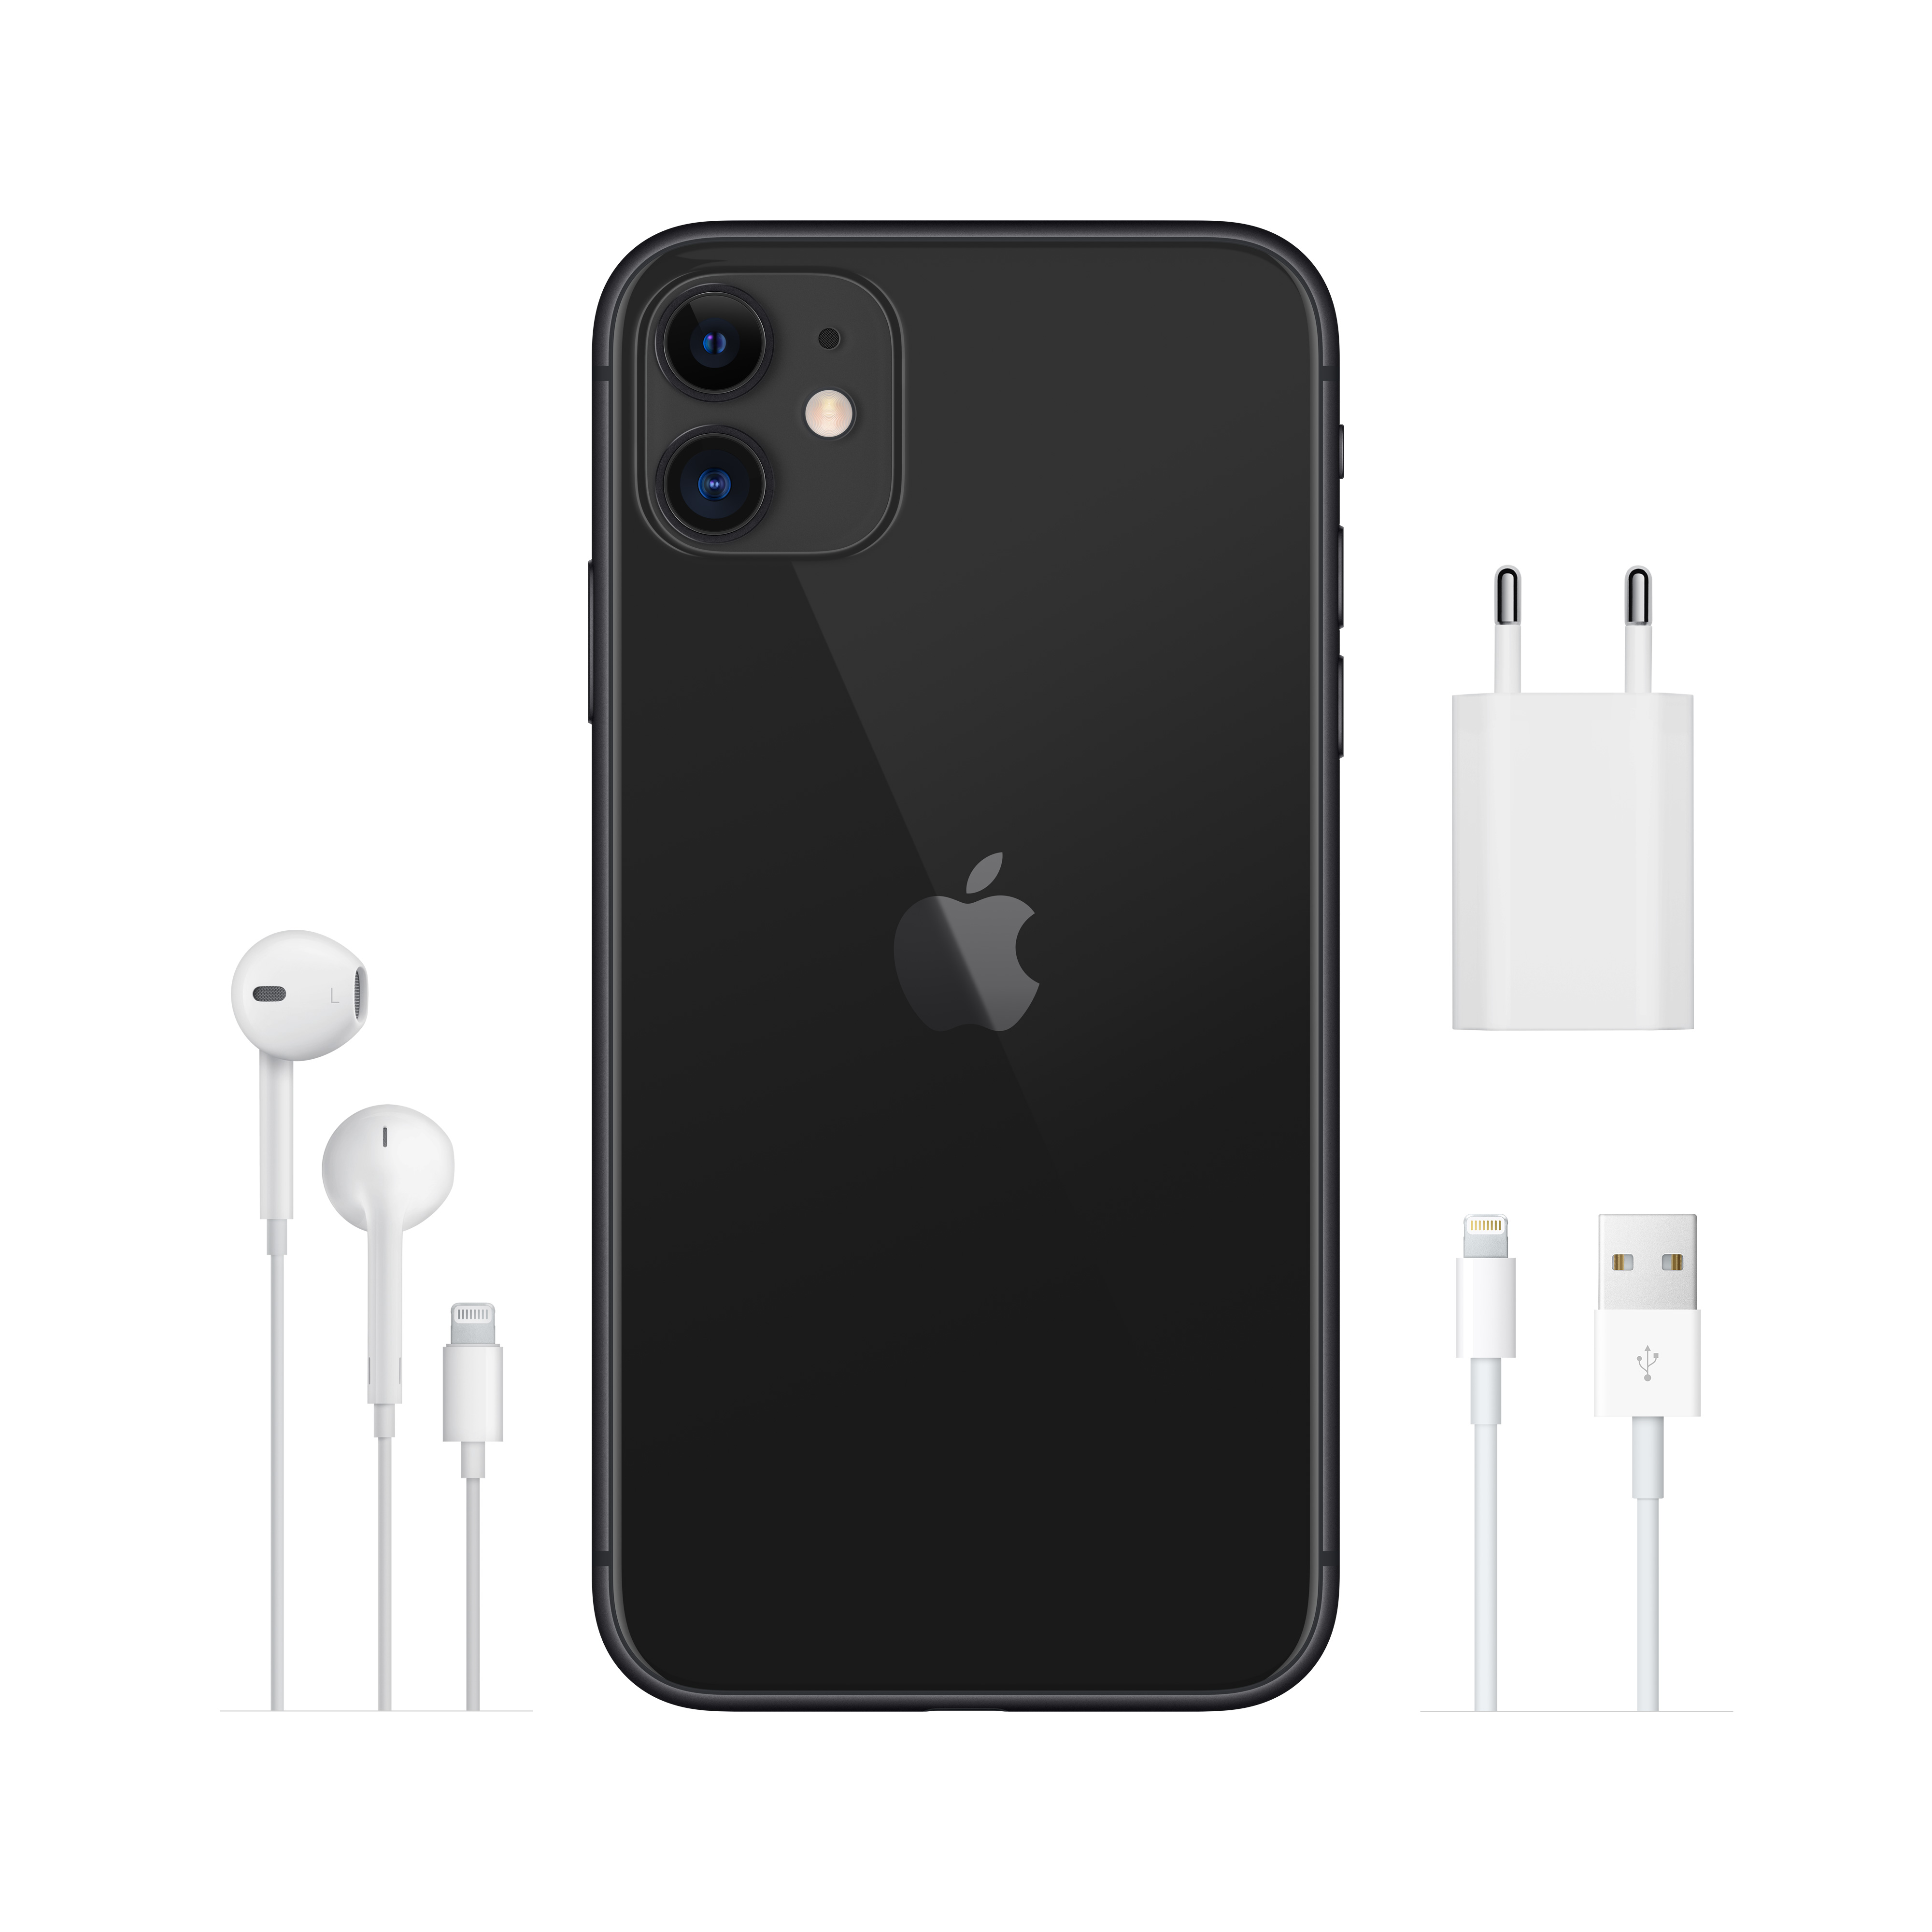 Фото — Apple iPhone 11, 64 ГБ, черный, новая комплектация